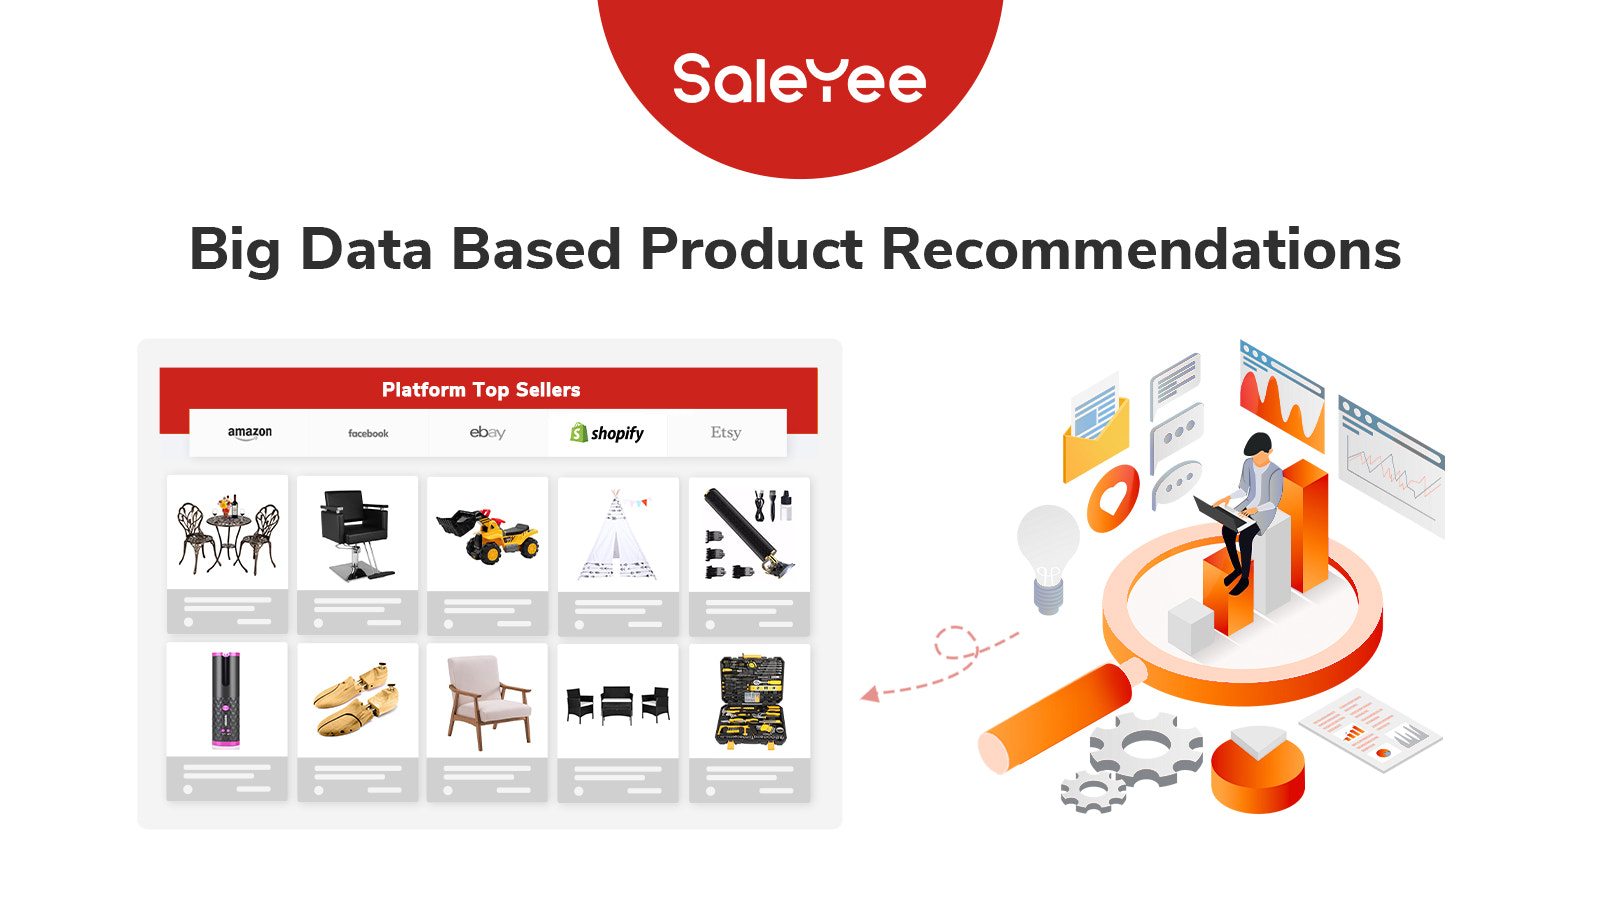 saleyee-stor-data-baseret-produkt-anbefalinger